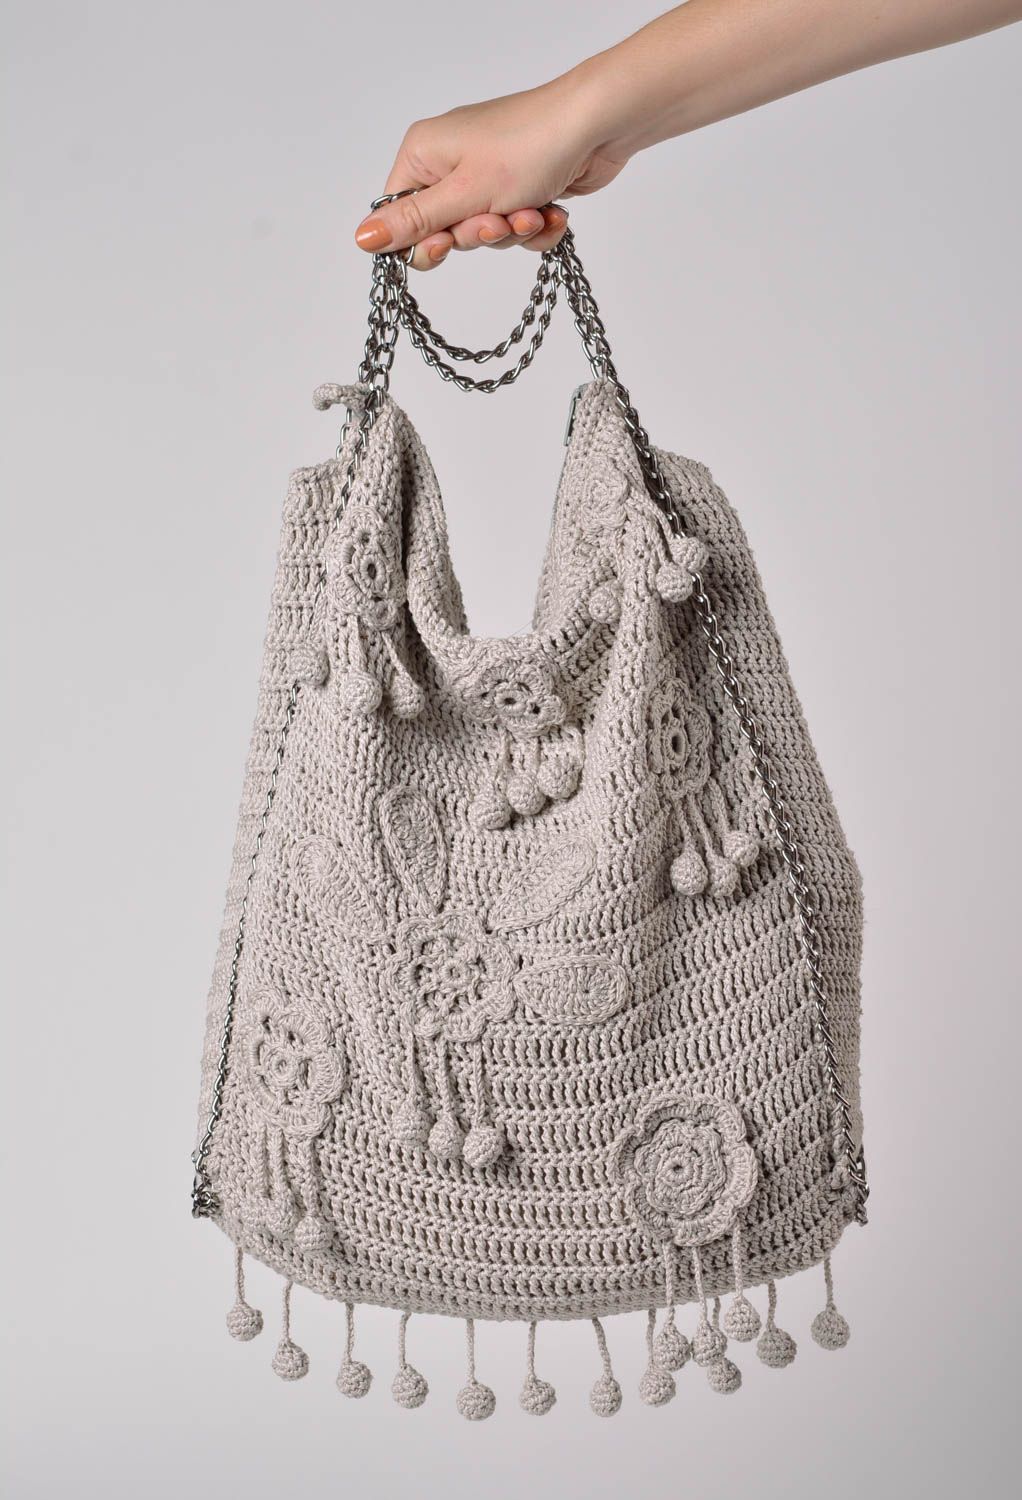 Bolso tejido de hilos de algodón artesanal de color gris con cadenita para mujer foto 2